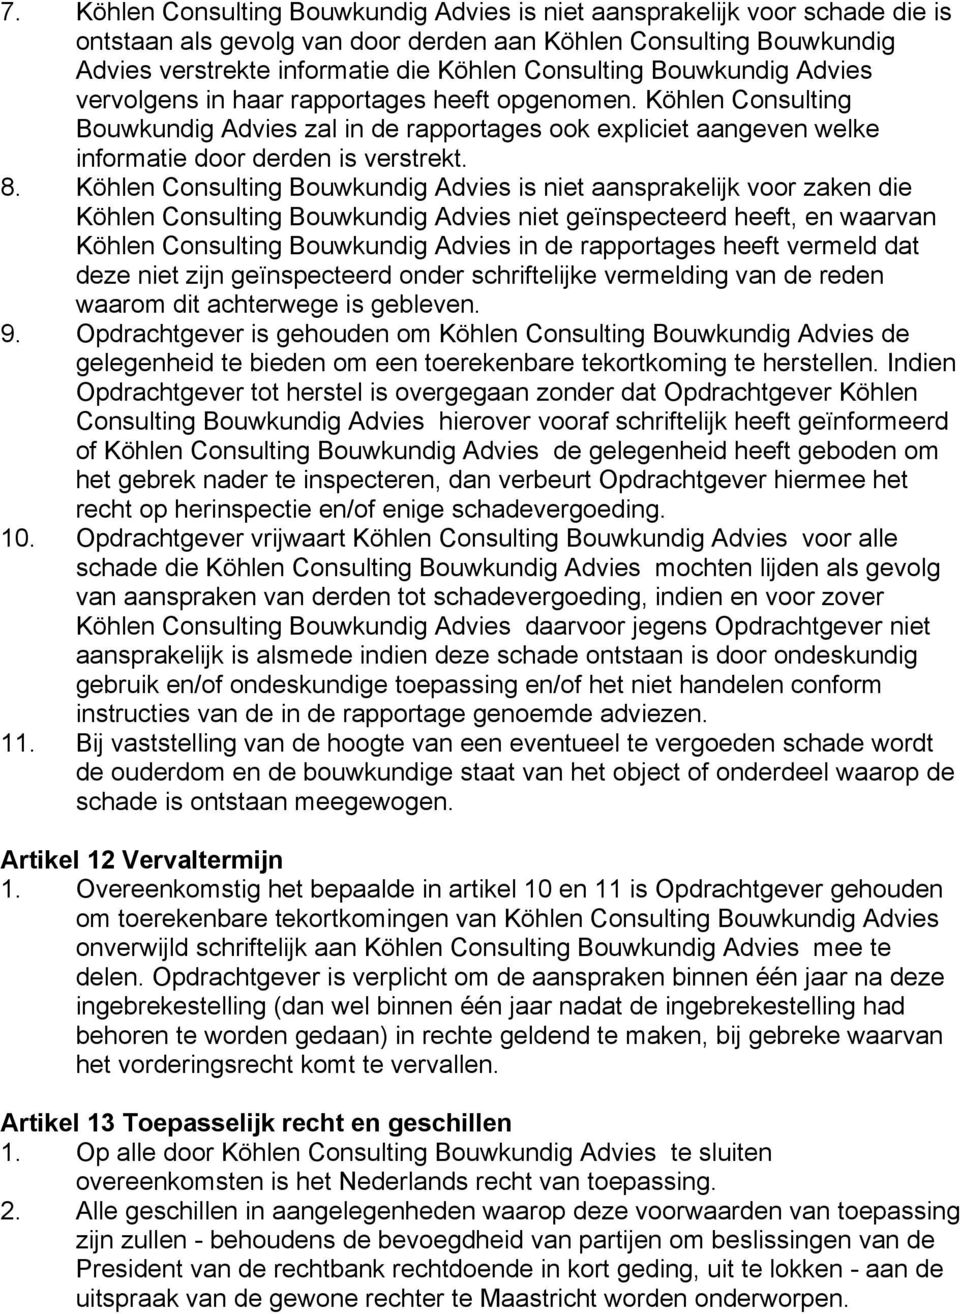 Köhlen Consulting Bouwkundig Advies is niet aansprakelijk voor zaken die Köhlen Consulting Bouwkundig Advies niet geïnspecteerd heeft, en waarvan Köhlen Consulting Bouwkundig Advies in de rapportages